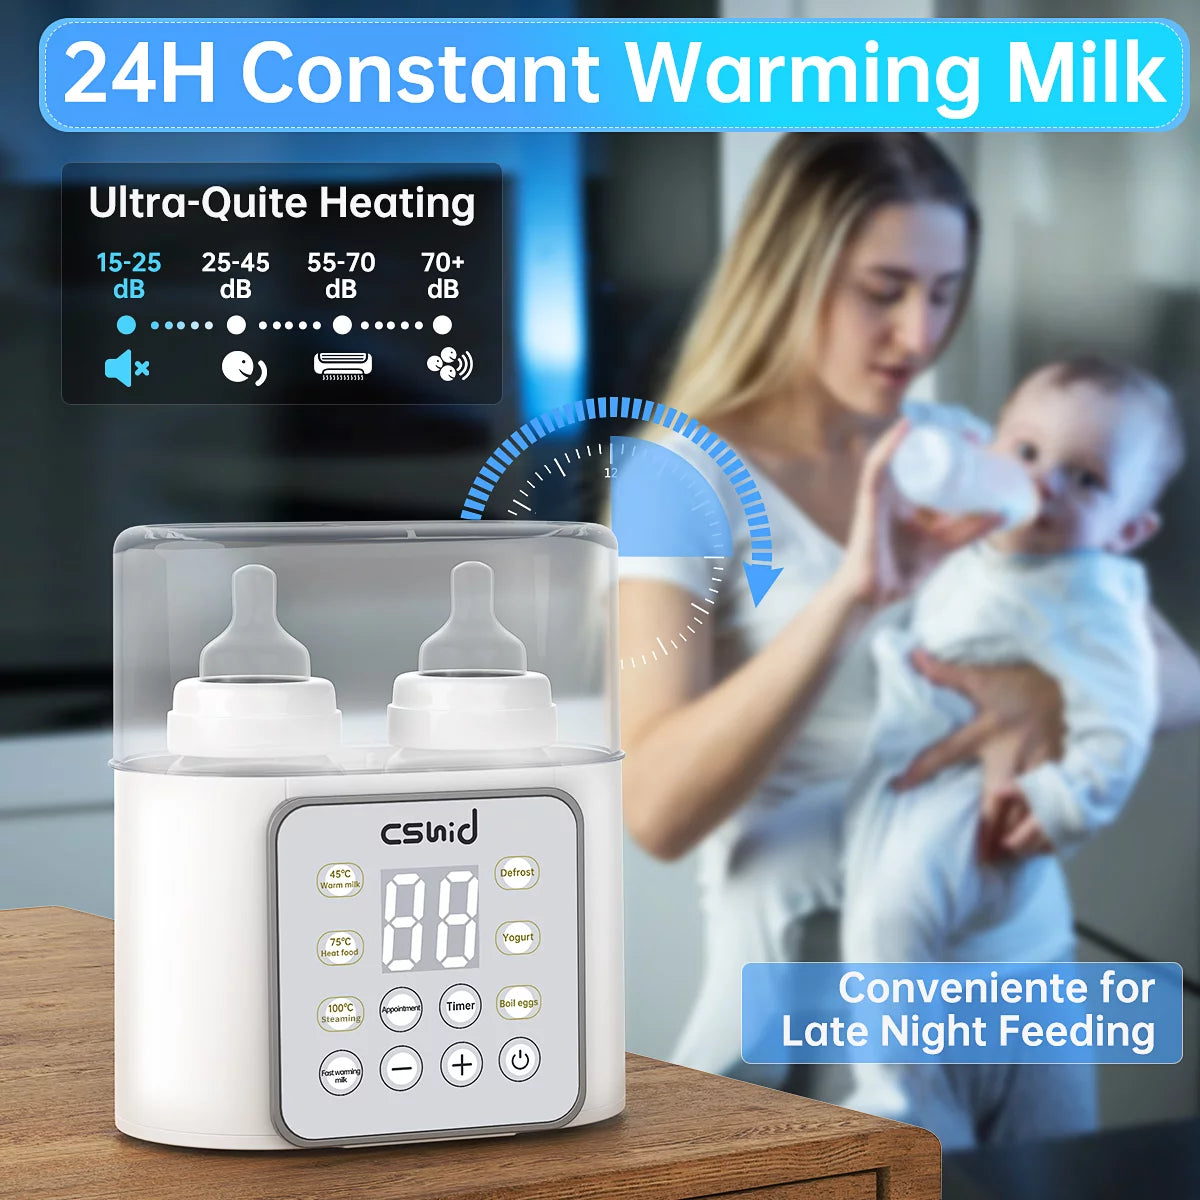 Baby Bottle Warmer, 9-In-1 Fast Milk Warmer Babies Food Heater & Defrost